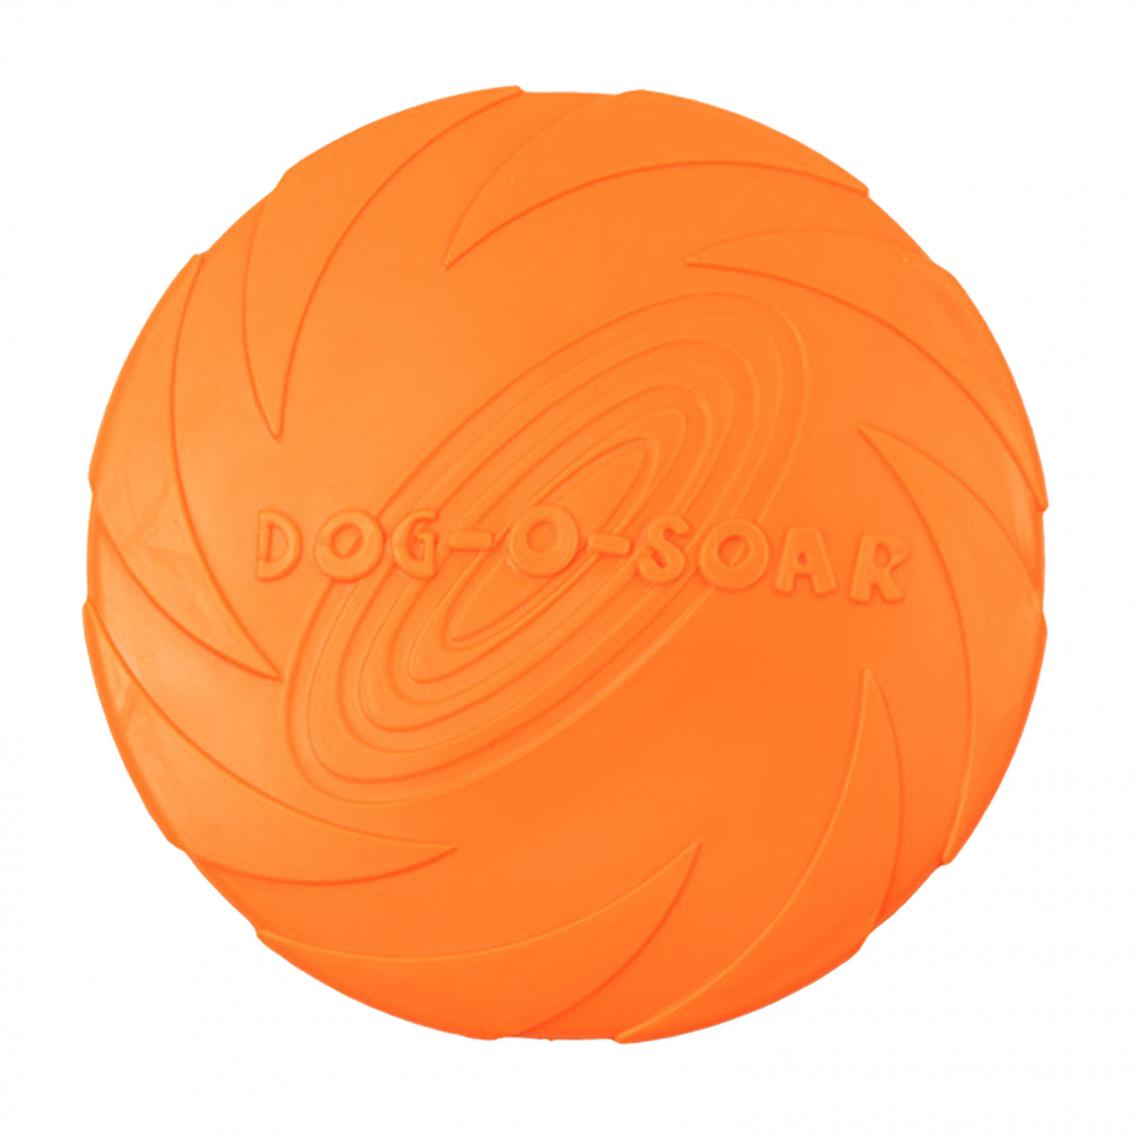 marque generique - Le Chien Interactif De Plaque De Vol De Plage D'été En Caoutchouc Mou Joue L'orange 22cm - Jouet pour chien